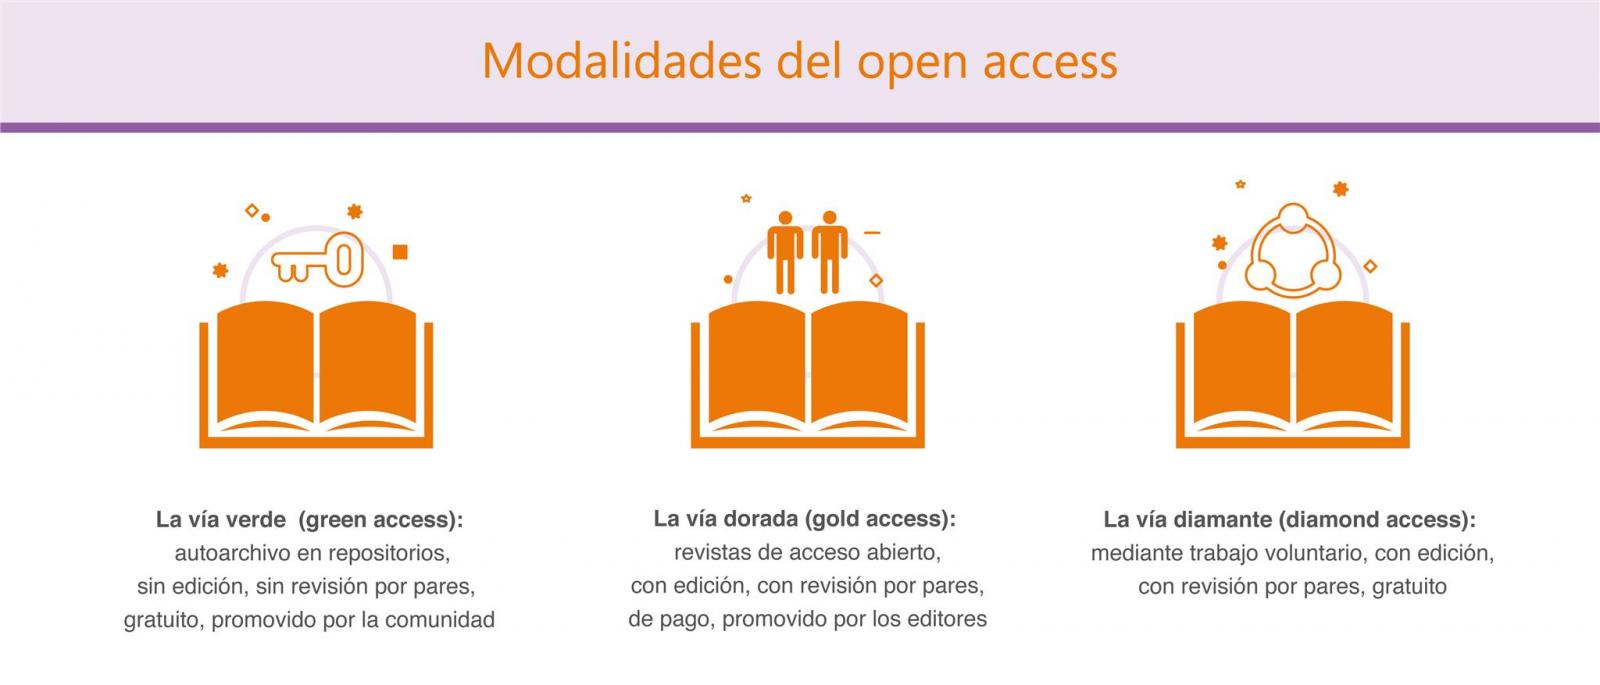 Modalidades del open access